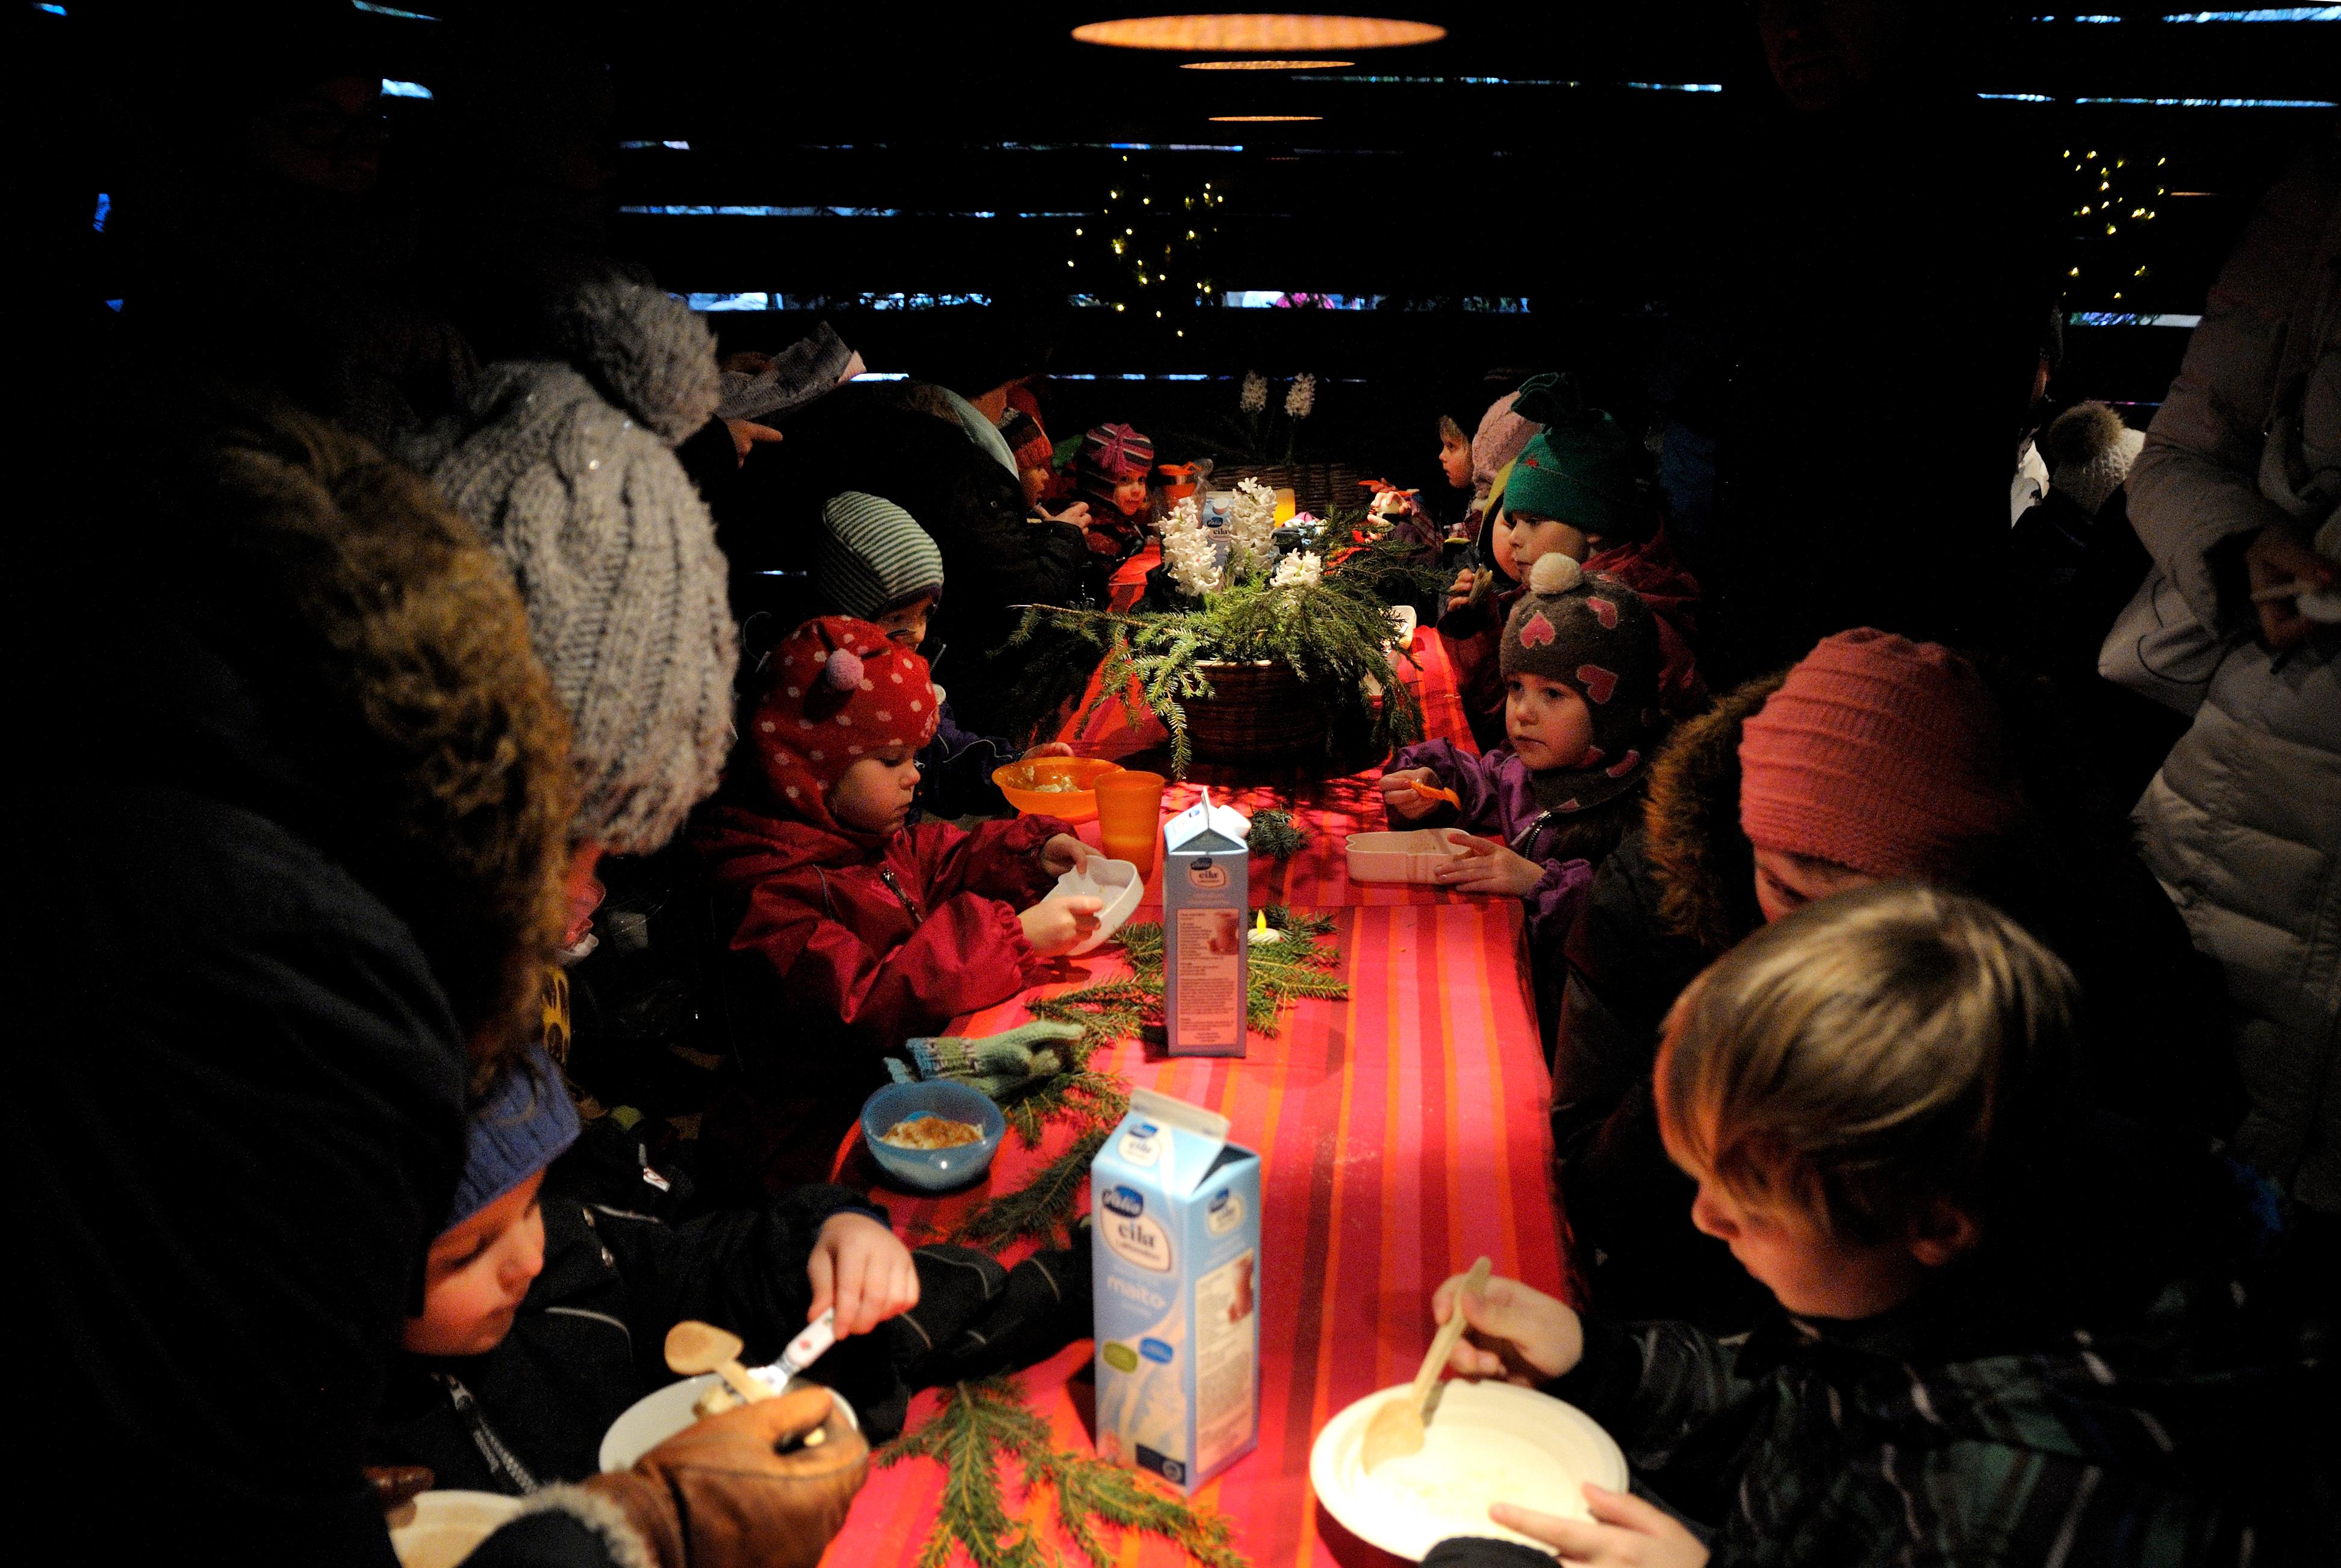 Kuvassa lapsia ja aikuisia istumassa Antin kaffeliiterissä pöydän ääressä. Lapset syövät puuroa.